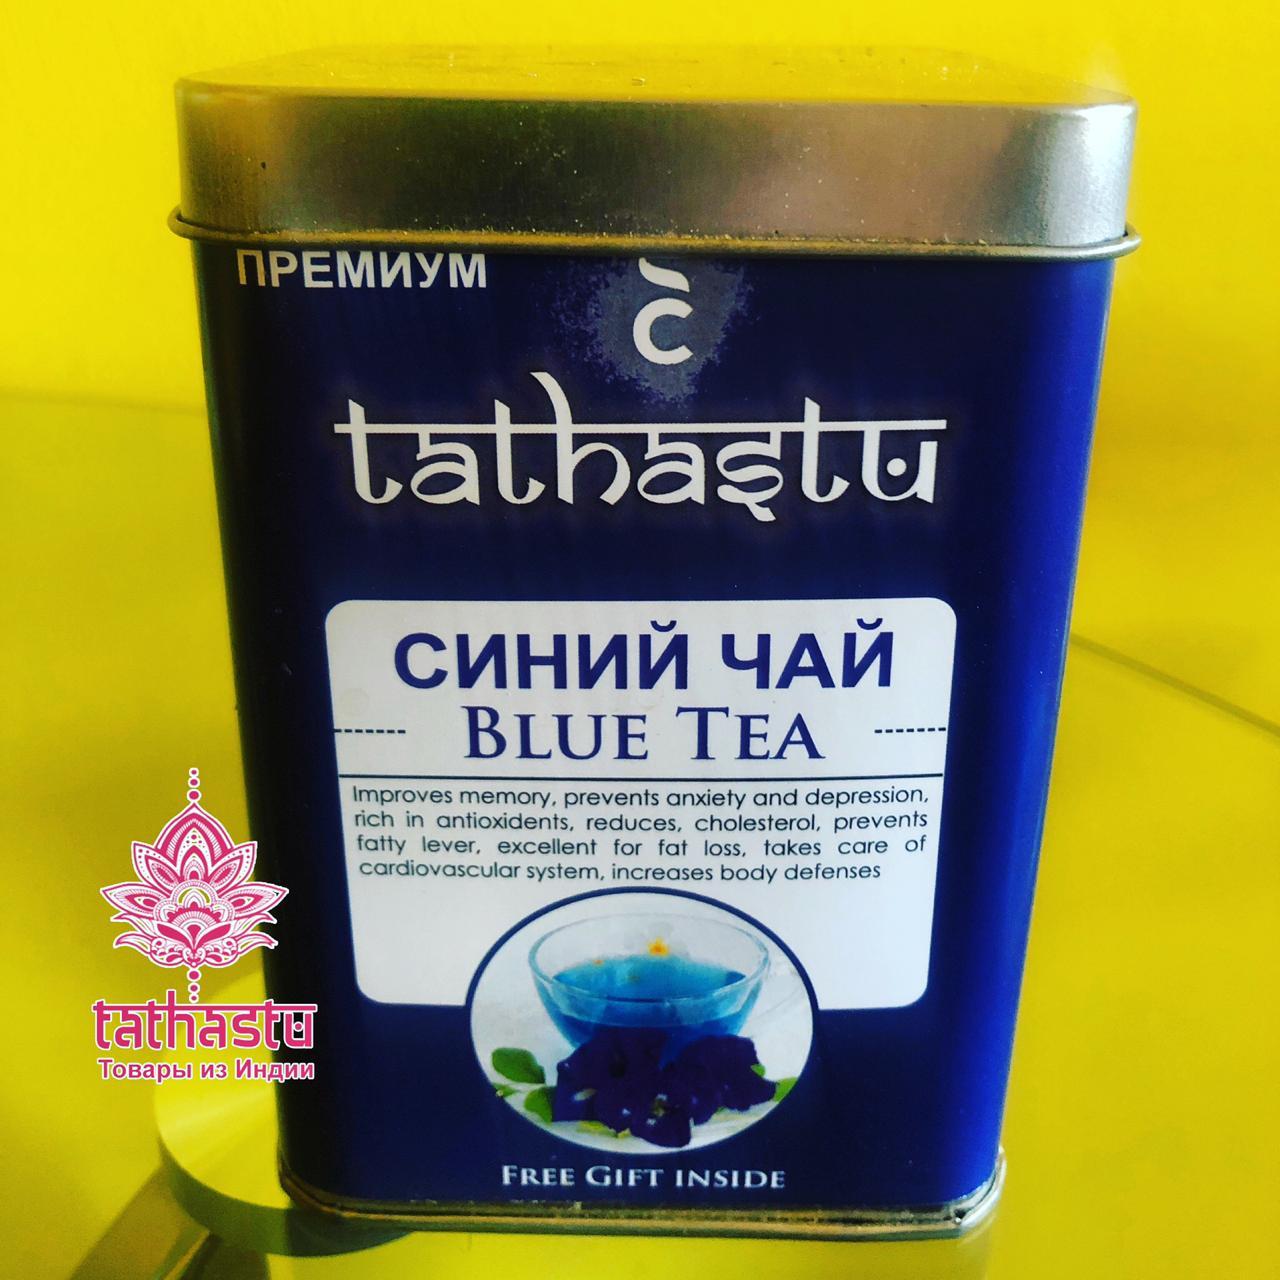 Tathastu синий чай. Tathastu товары и индии